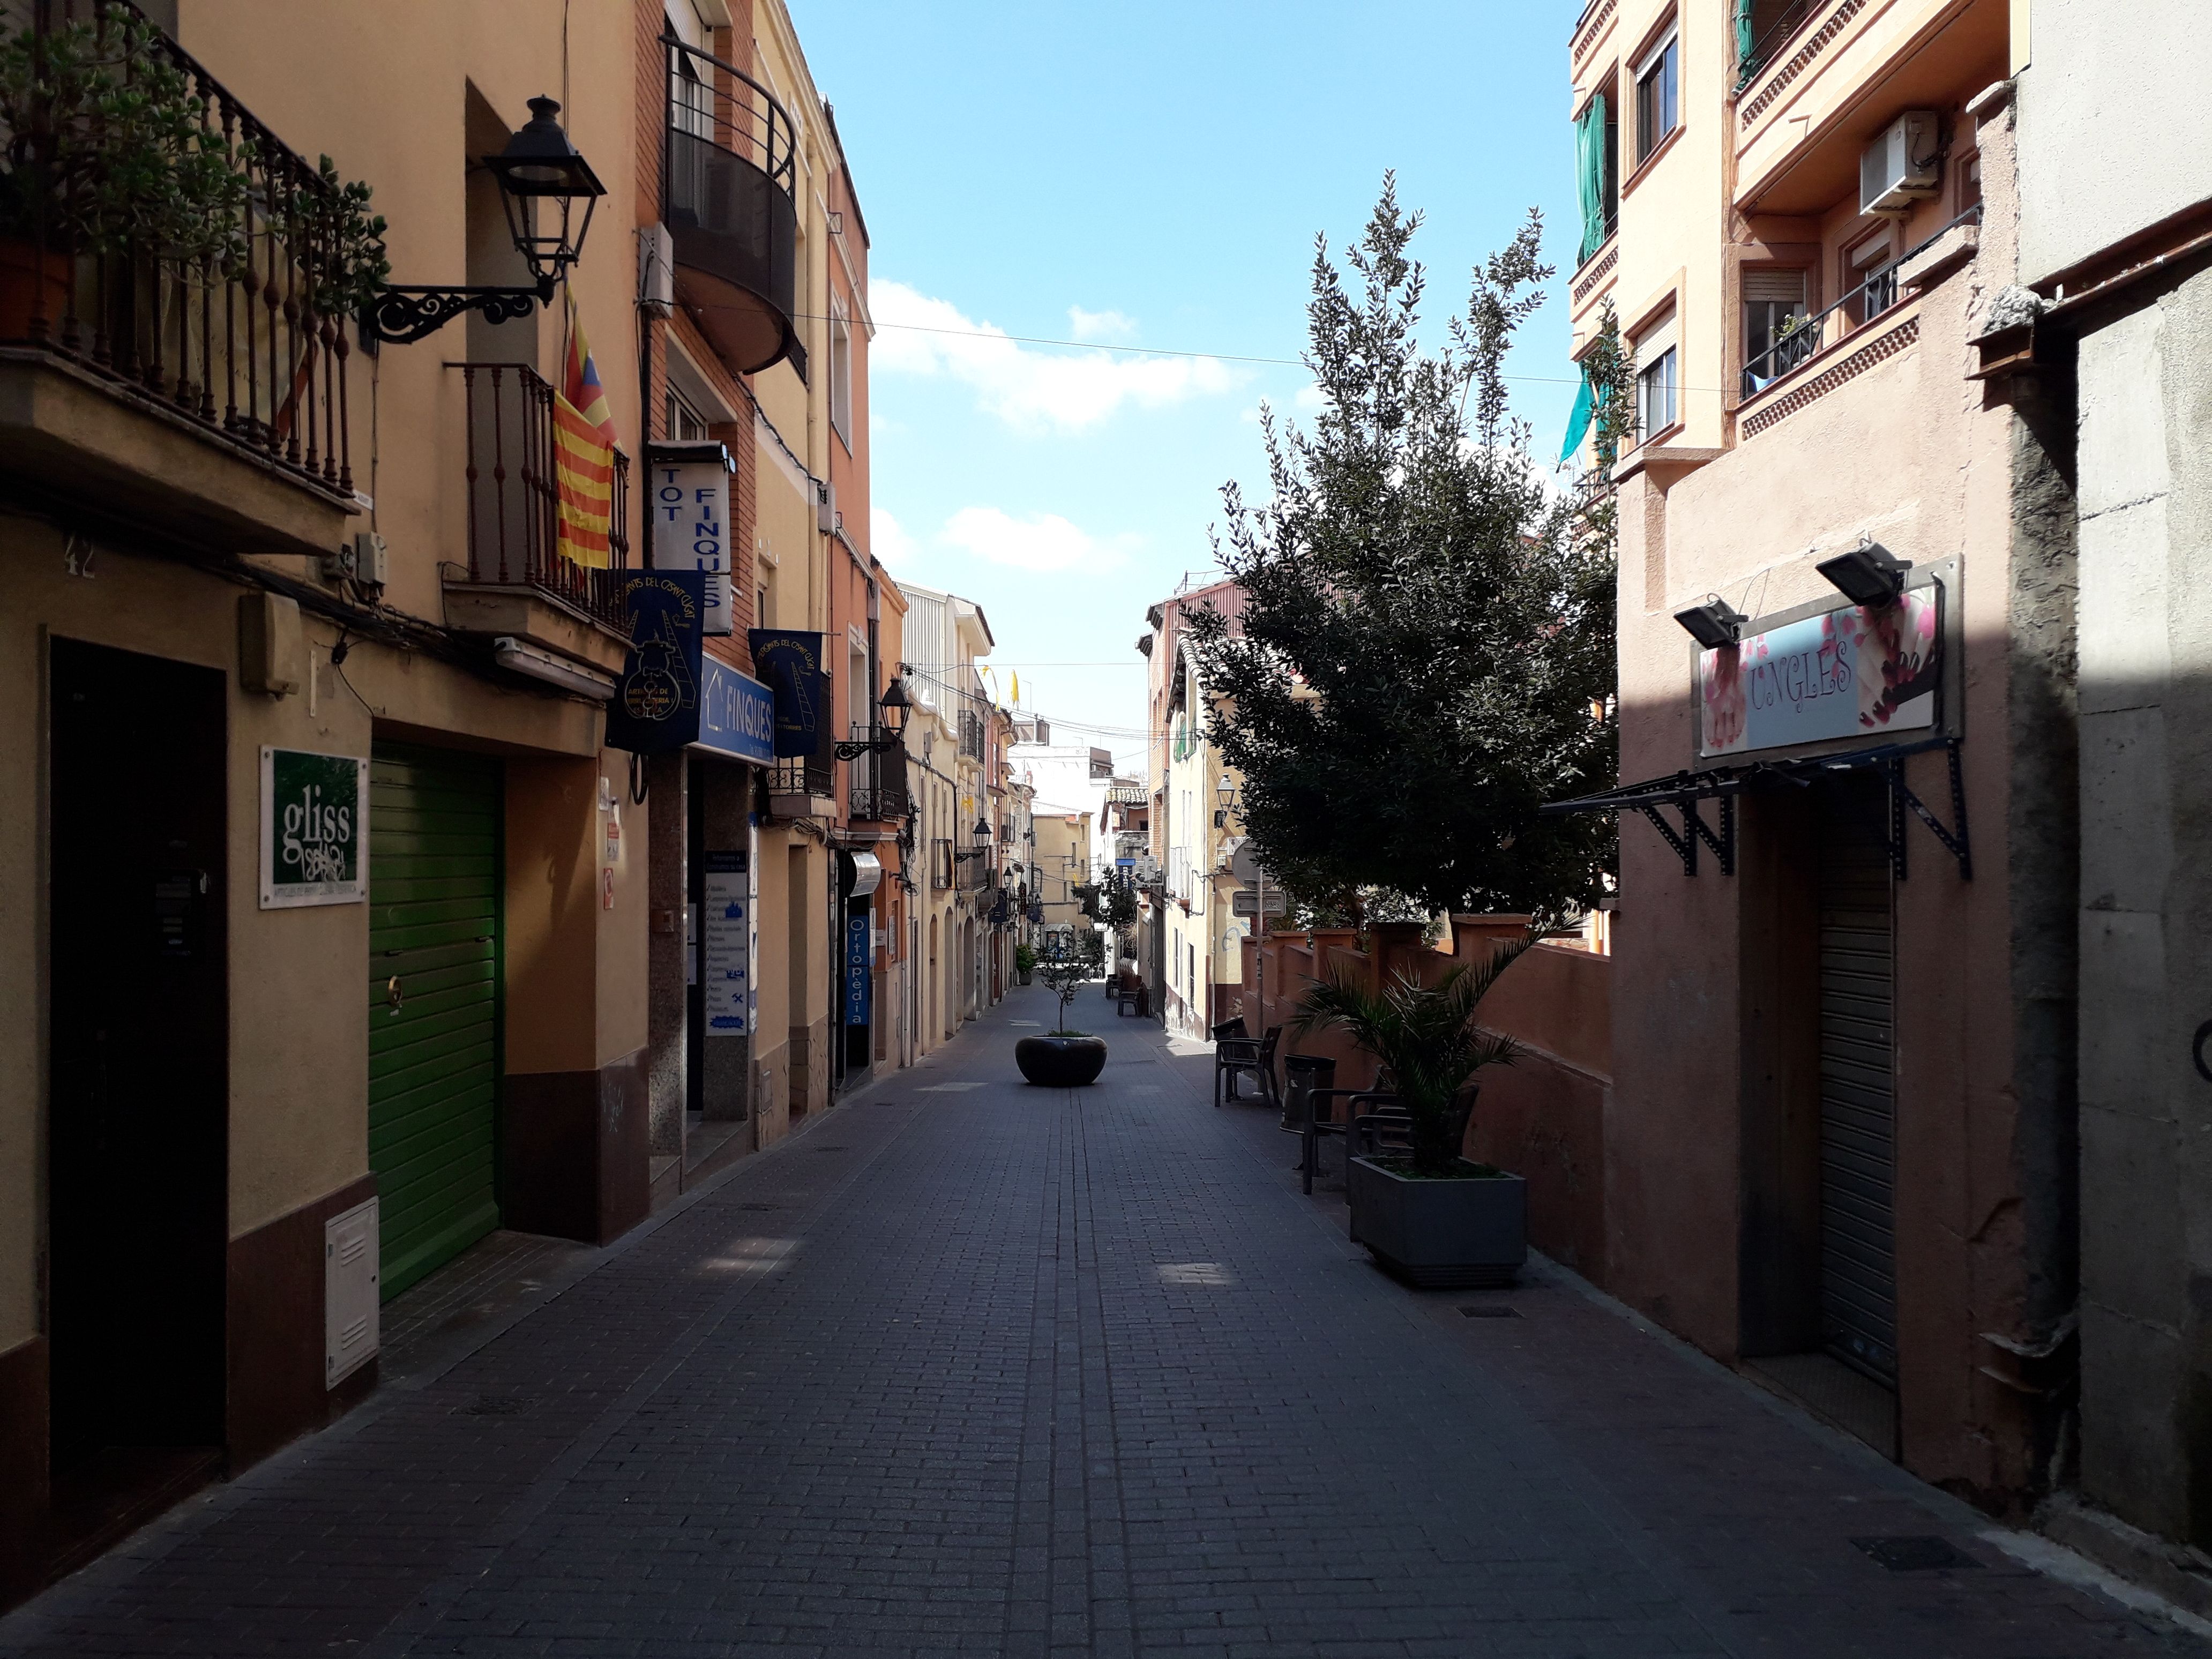 Carrers buits i la majoria de botigues tancades a Rubí. El Govern preveu que el PIB català es desplomi i l'atur arribi fins al 18% a causa del coronavirus. | FOTO: Redacció